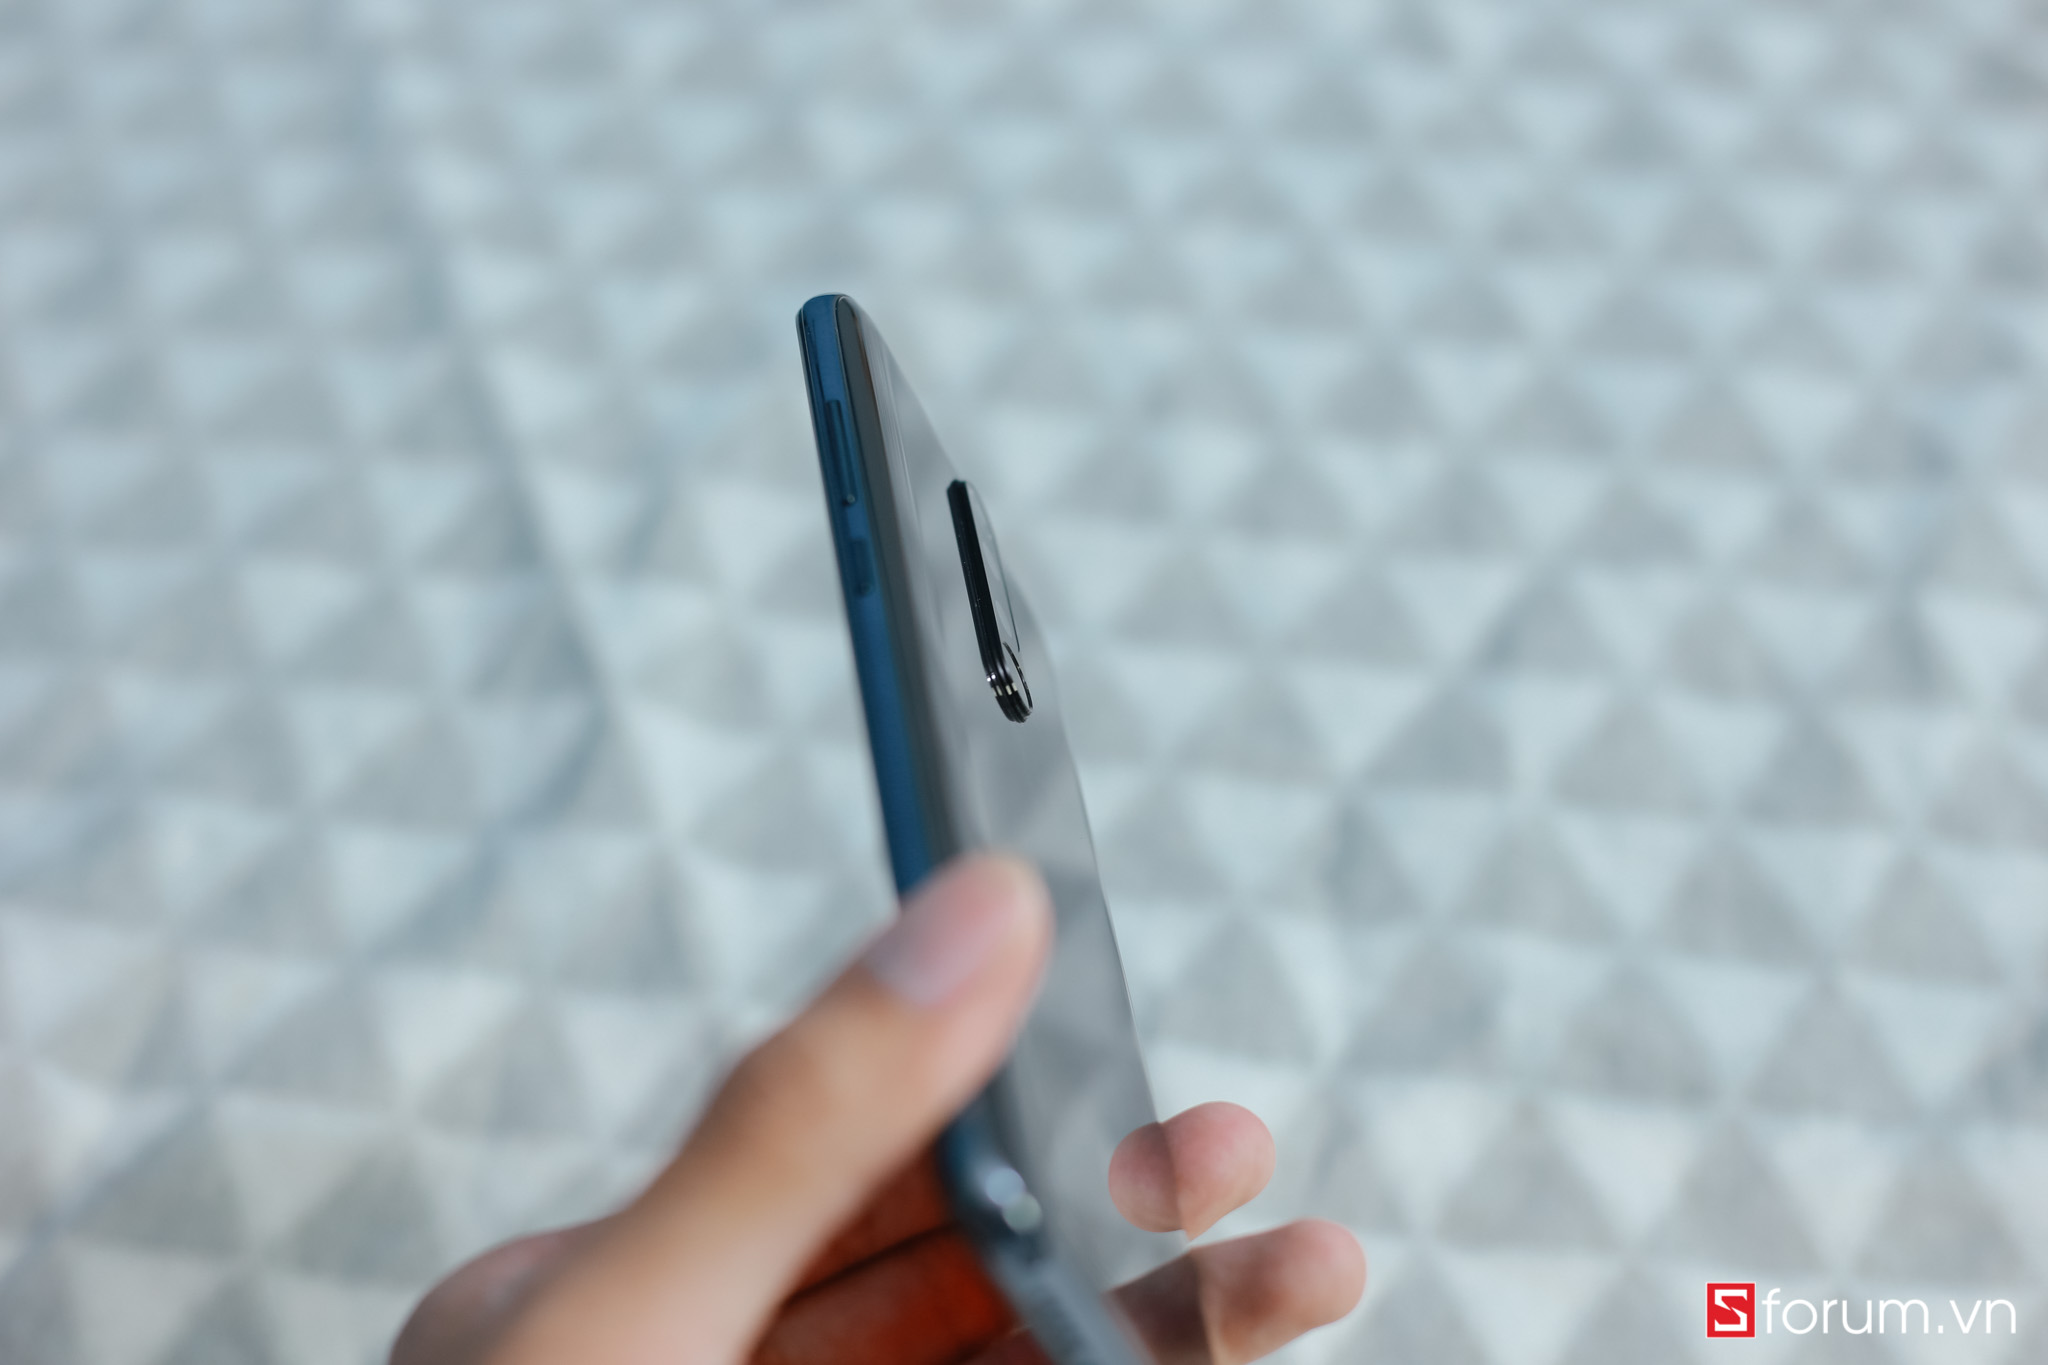 Sforum - Trang thông tin công nghệ mới nhất IMG_9782 Trên tay Redmi Note 8 Pro đầu tiên tại VN: Thiết kế mới, camera 64MP 